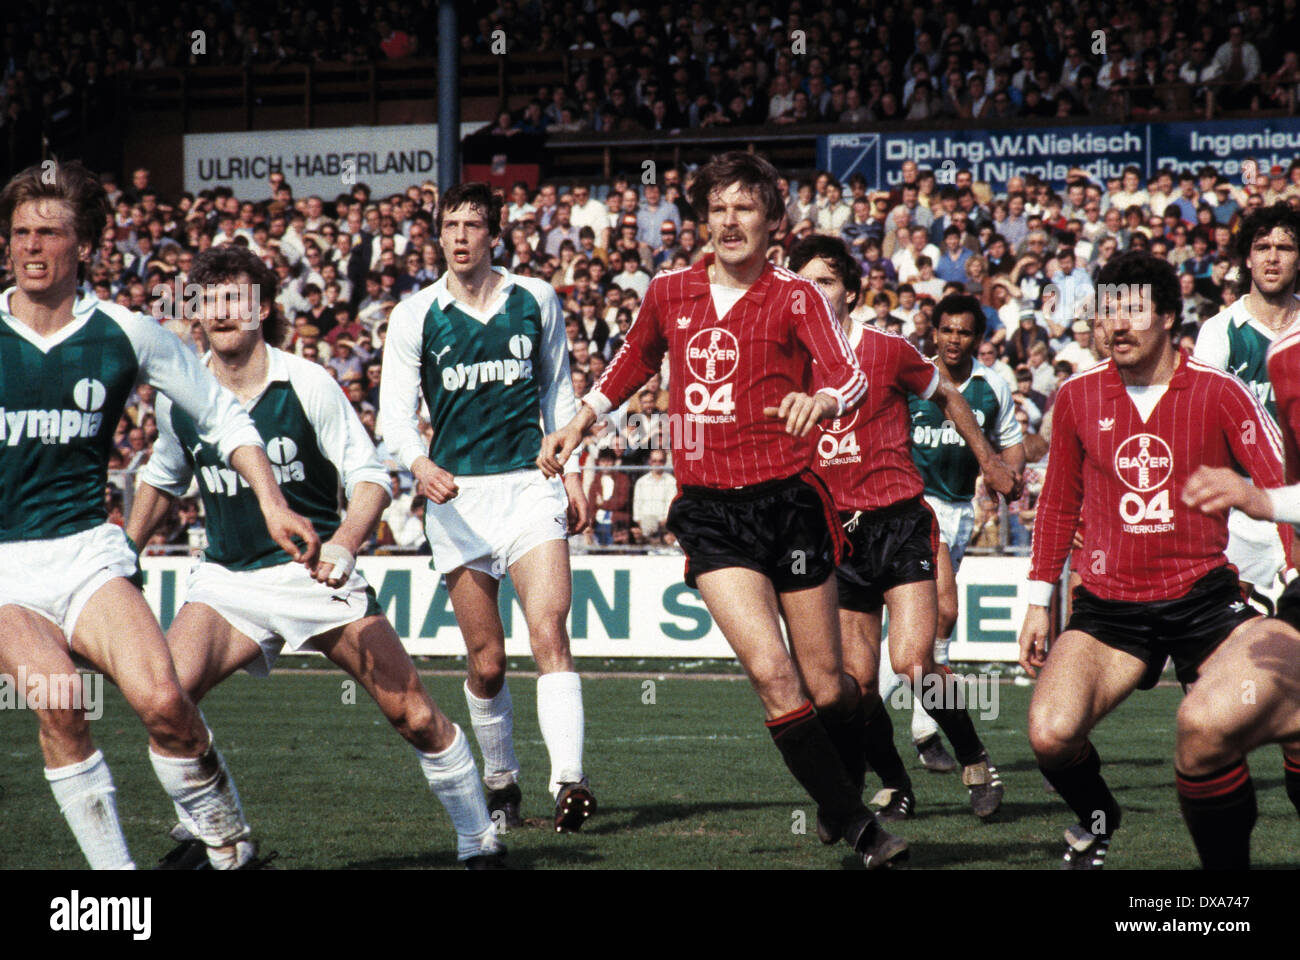 Calcio, Bundesliga, 1983/1984, Ulrich Haberland Stadium, Bayer 04 Leverkusen contro SV Werder Bremen 0:0, scena del match, f.l.t.r. Wolfgang Sidka (Werder), Rudi Voeller (Werder), Frank Neubarth (Werder), Juergen Gelsdorf (Bayer), Rudolf Wojtowicz (B Foto Stock